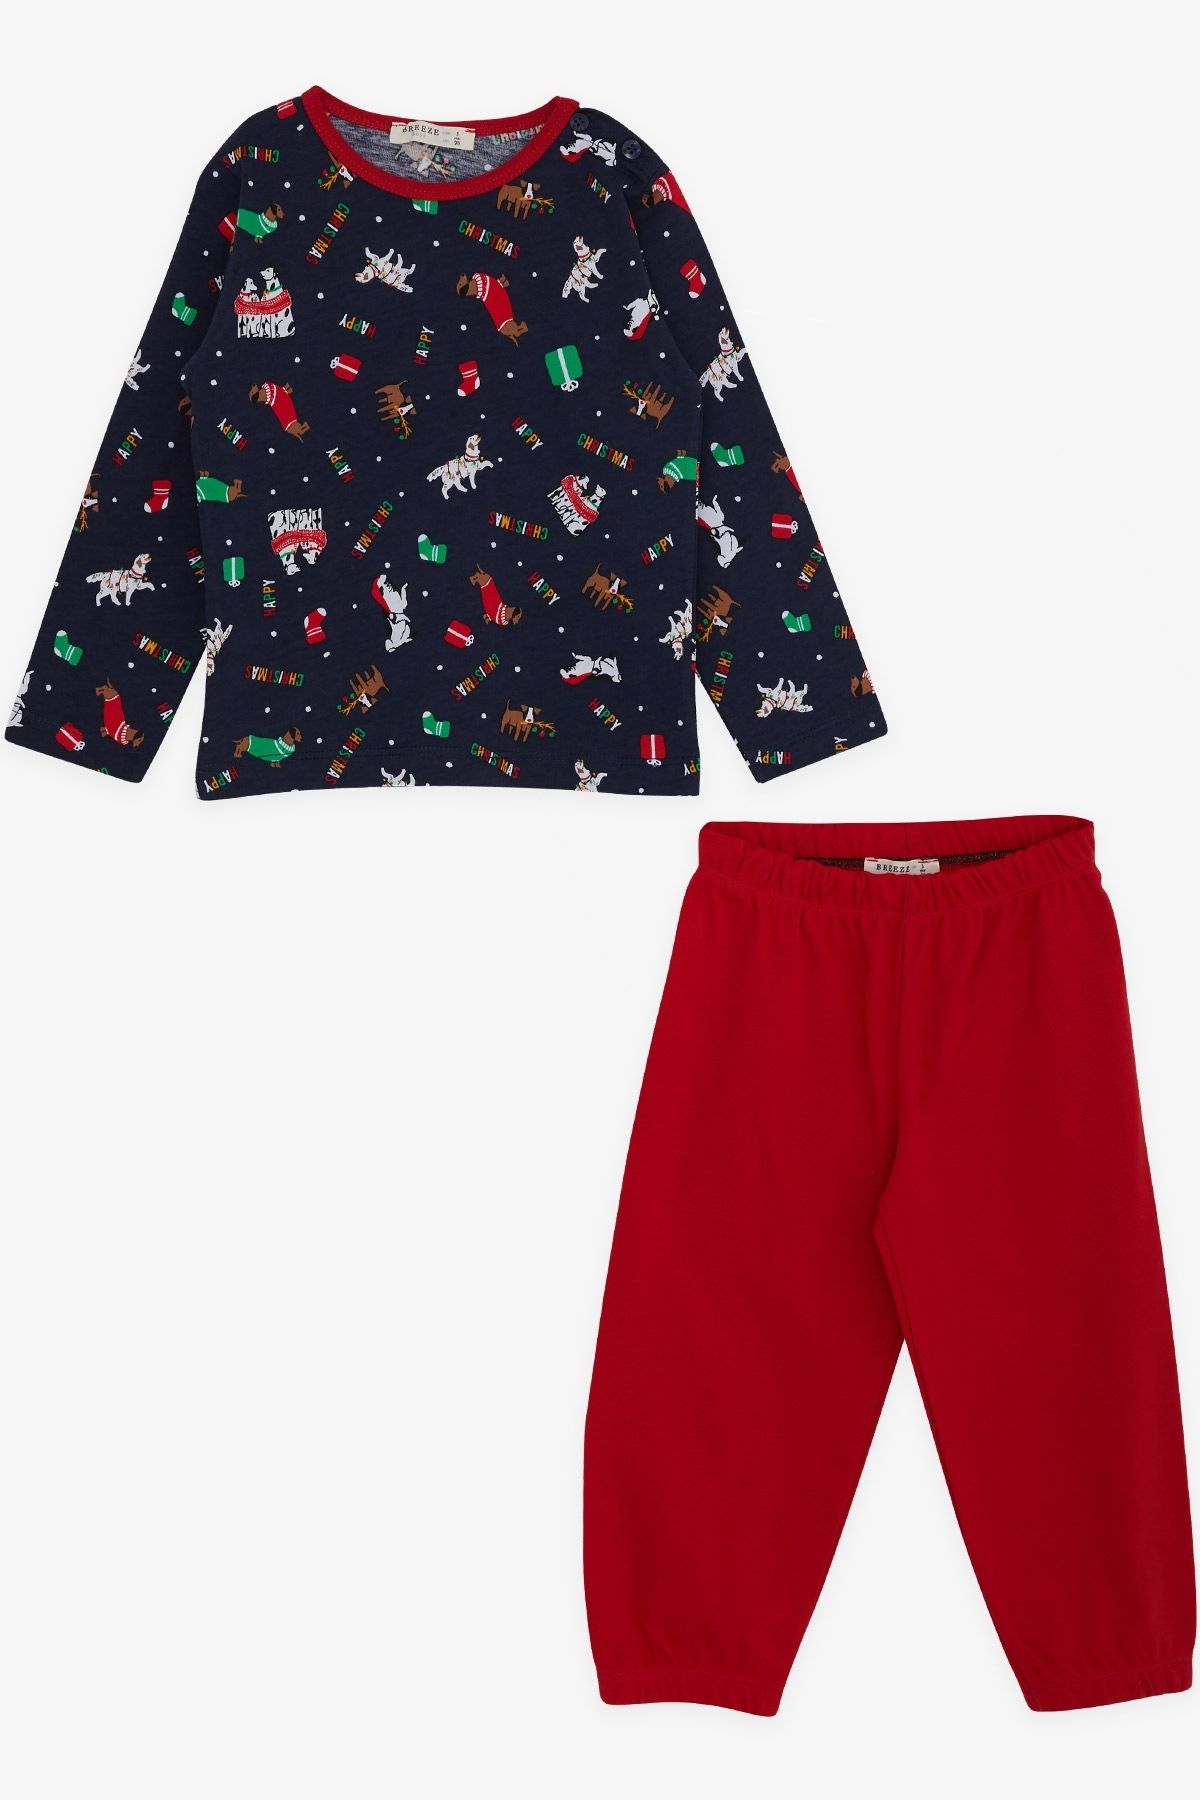 Breeze Erkek Bebek Pijama Takımı Yılbaşı Temalı 9 Ay-3 Yaş, Lacivert